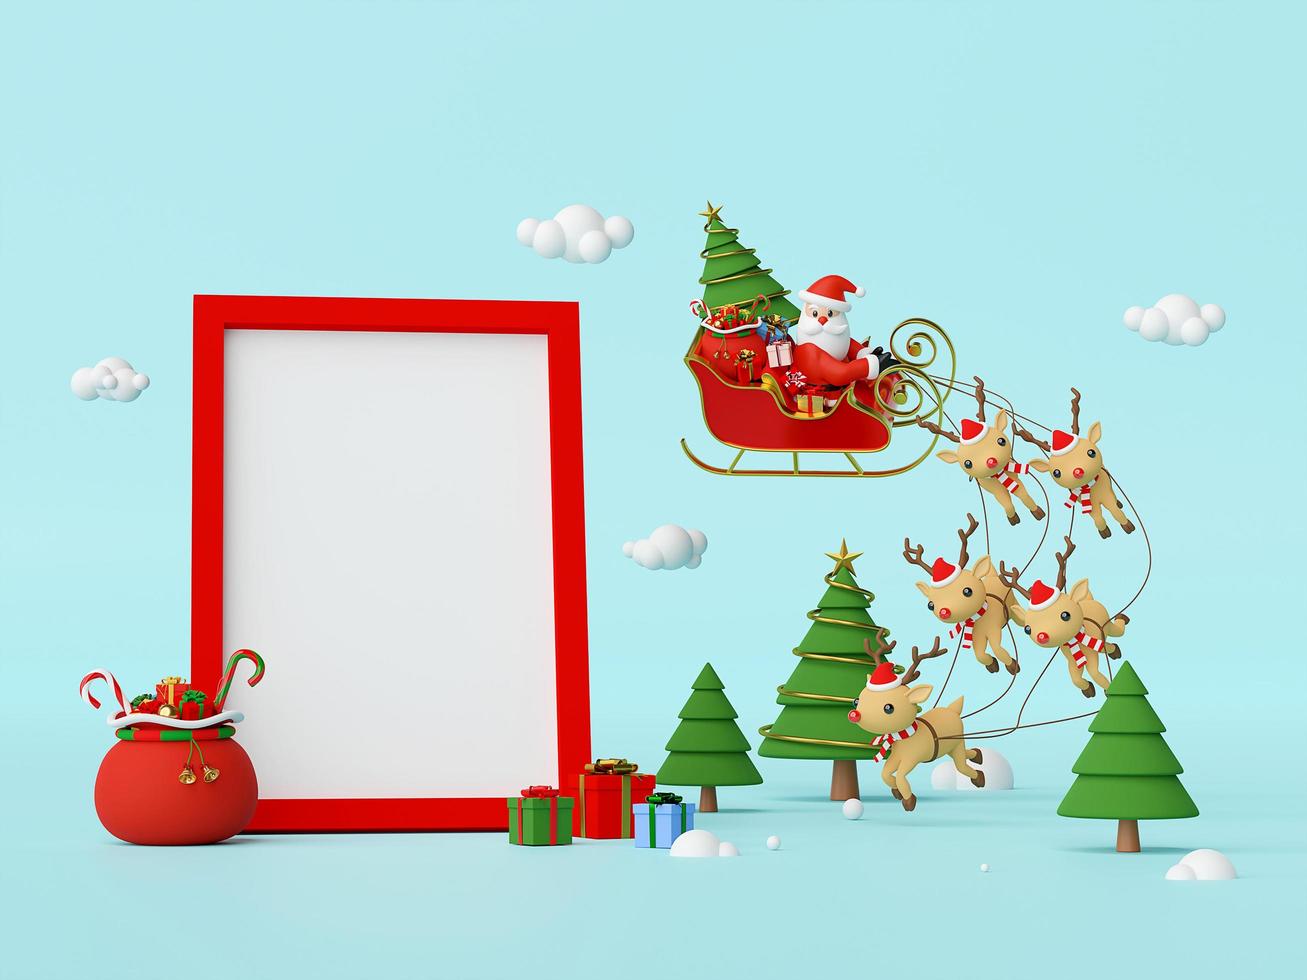 Szene des Weihnachtsmanns auf einem Schlitten voller Weihnachtsgeschenke und gezogen von Rentieren mit Leerzeichen im Rahmen, 3D-Rendering foto